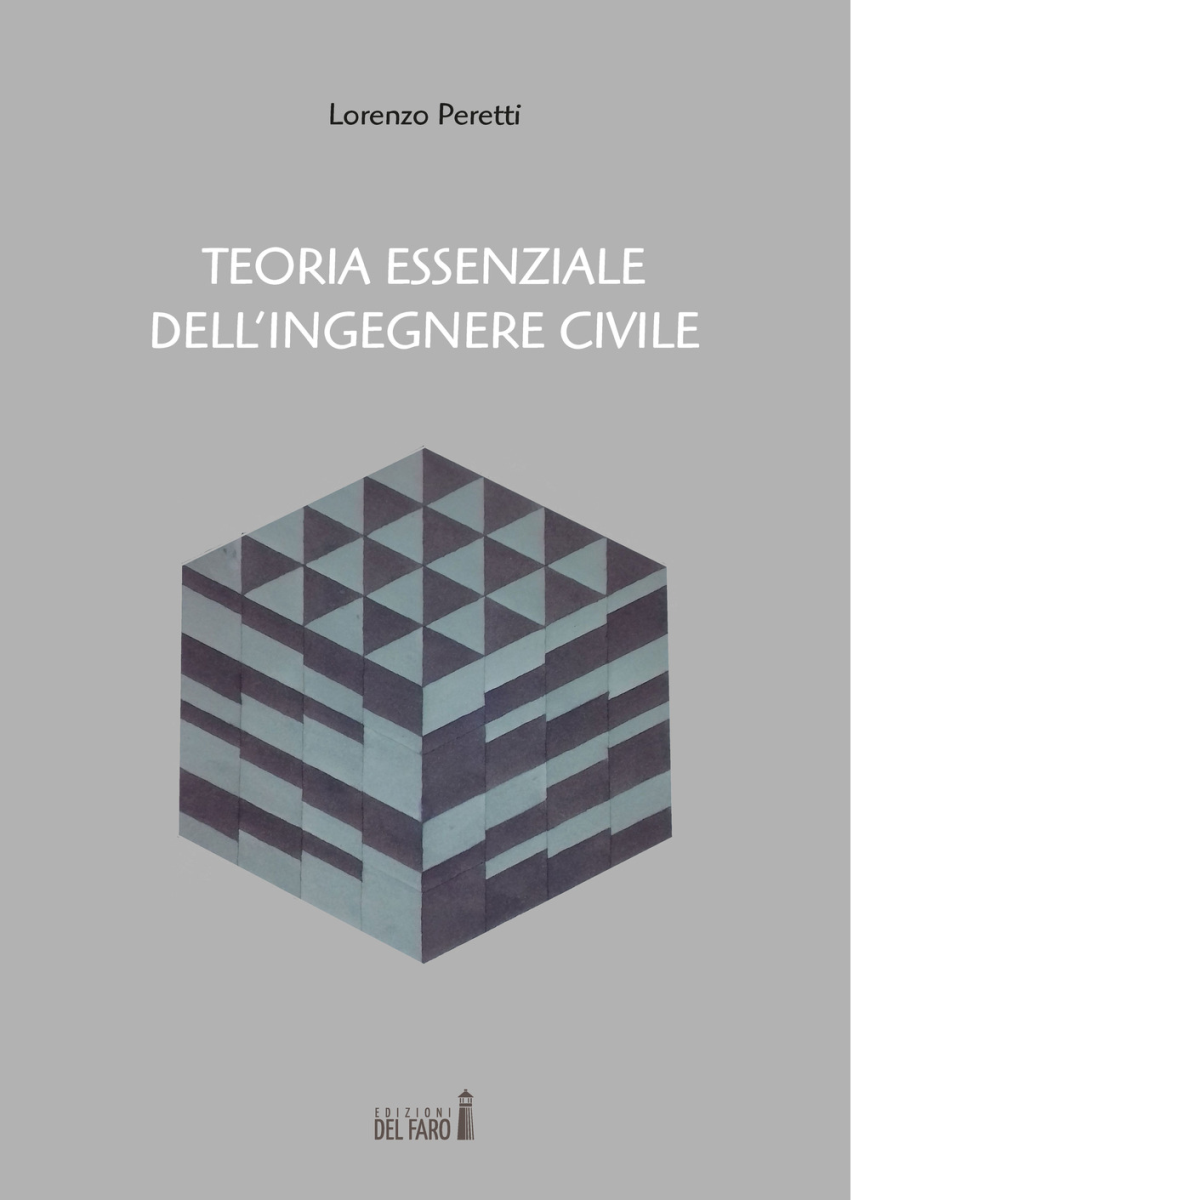 Teoria essenziale dell'ingegnere civile di Lorenzo Peretti - Del Faro, 2017 libro usato